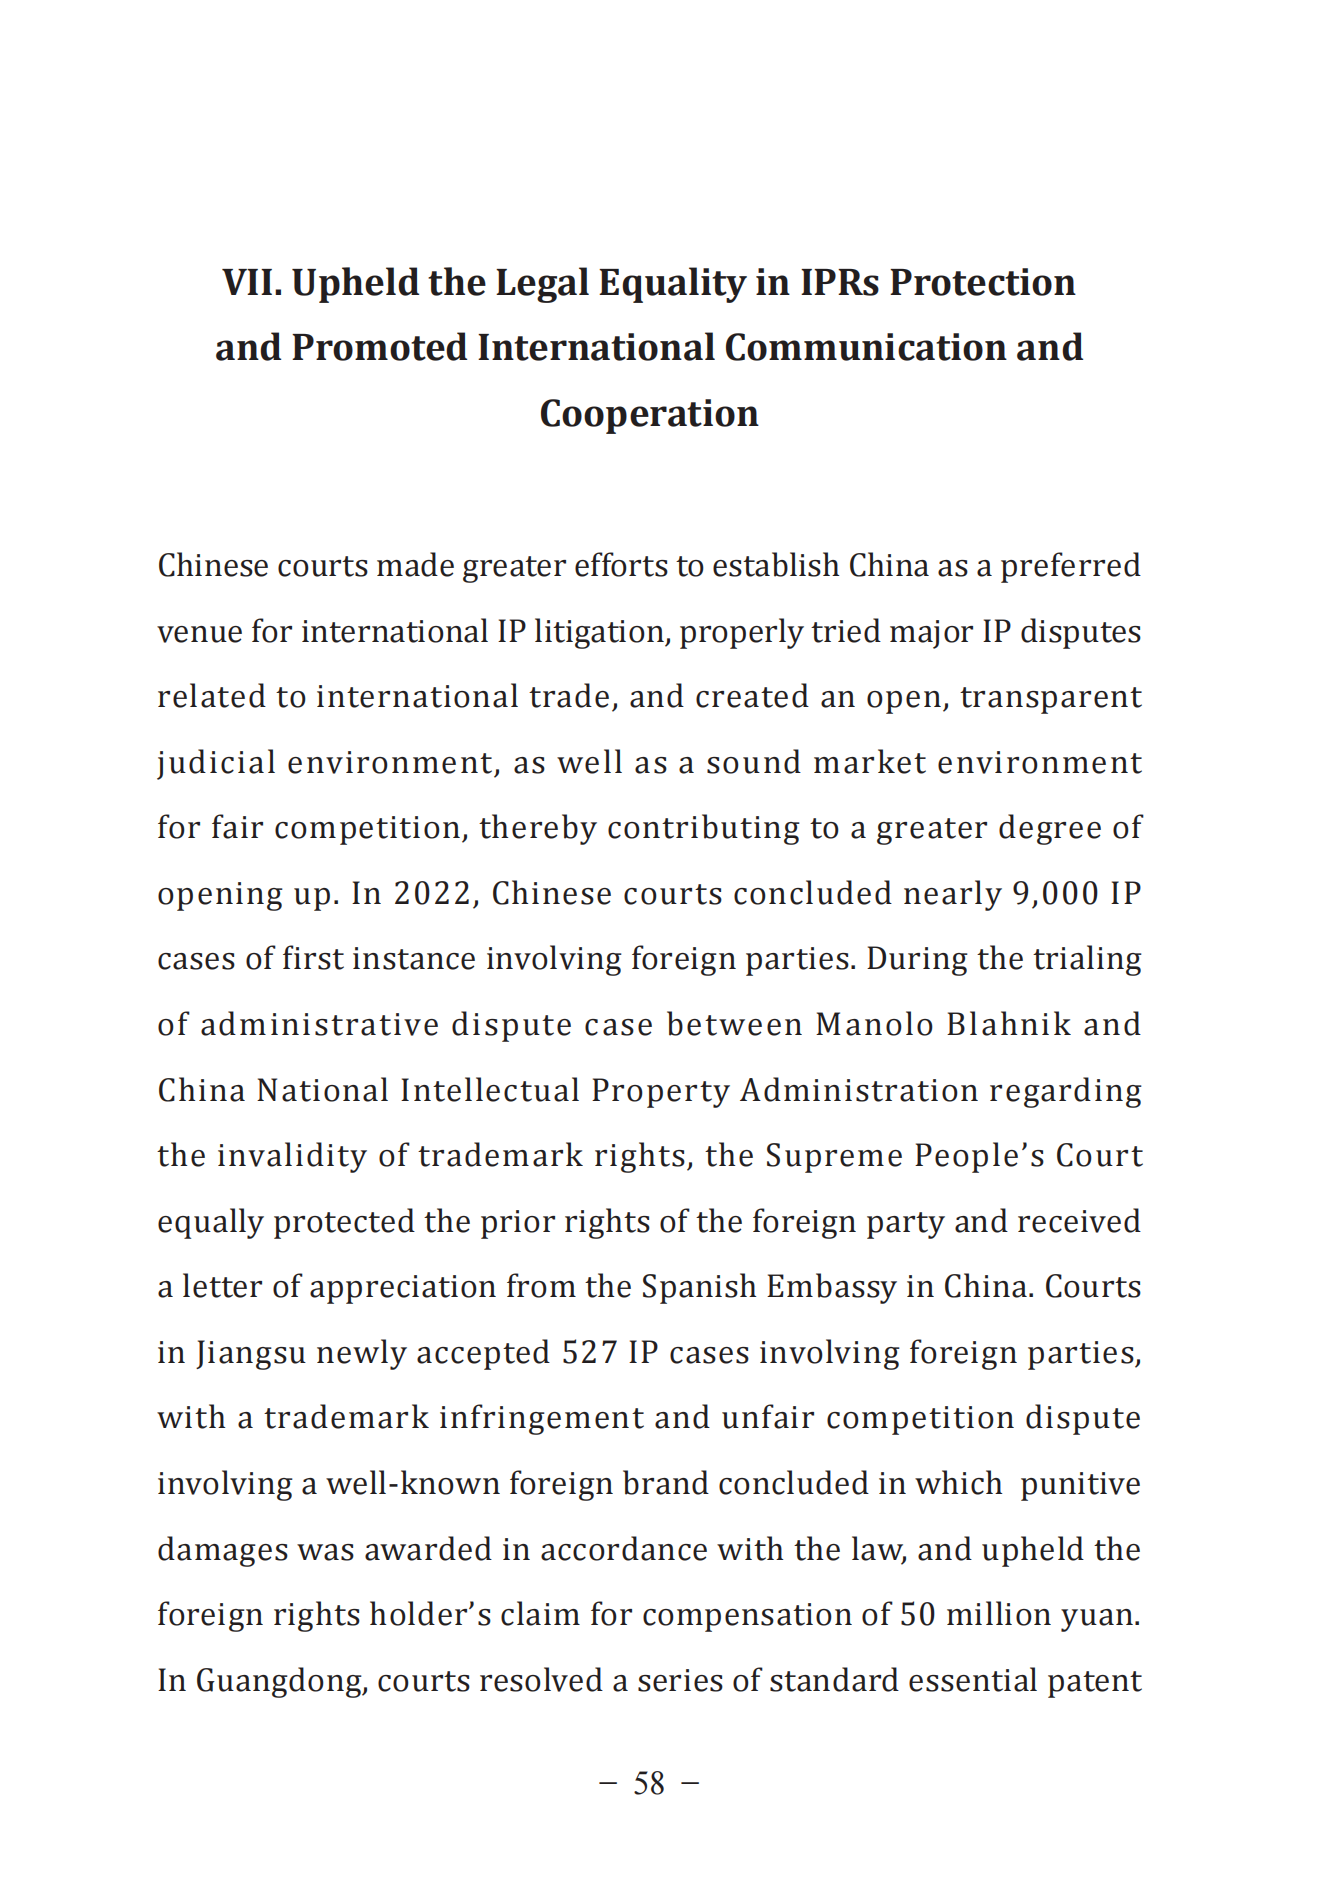 《中国法院知识产权司法保护状况（2022年）》全文发布！